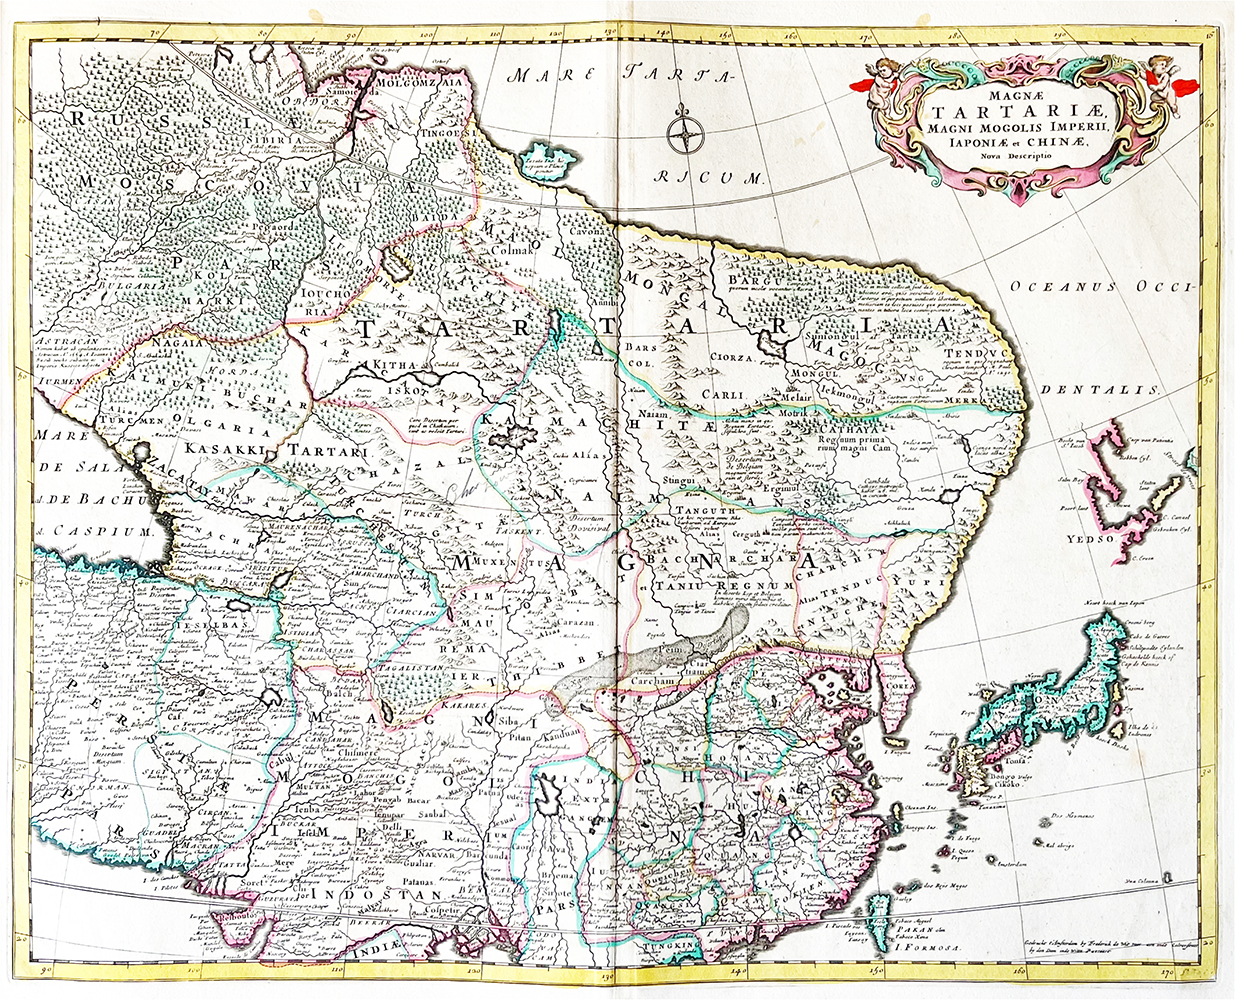 Купить карту Витсена (Новое описание Великой империи Тартарии, Великих Моголов Японии и Китая)